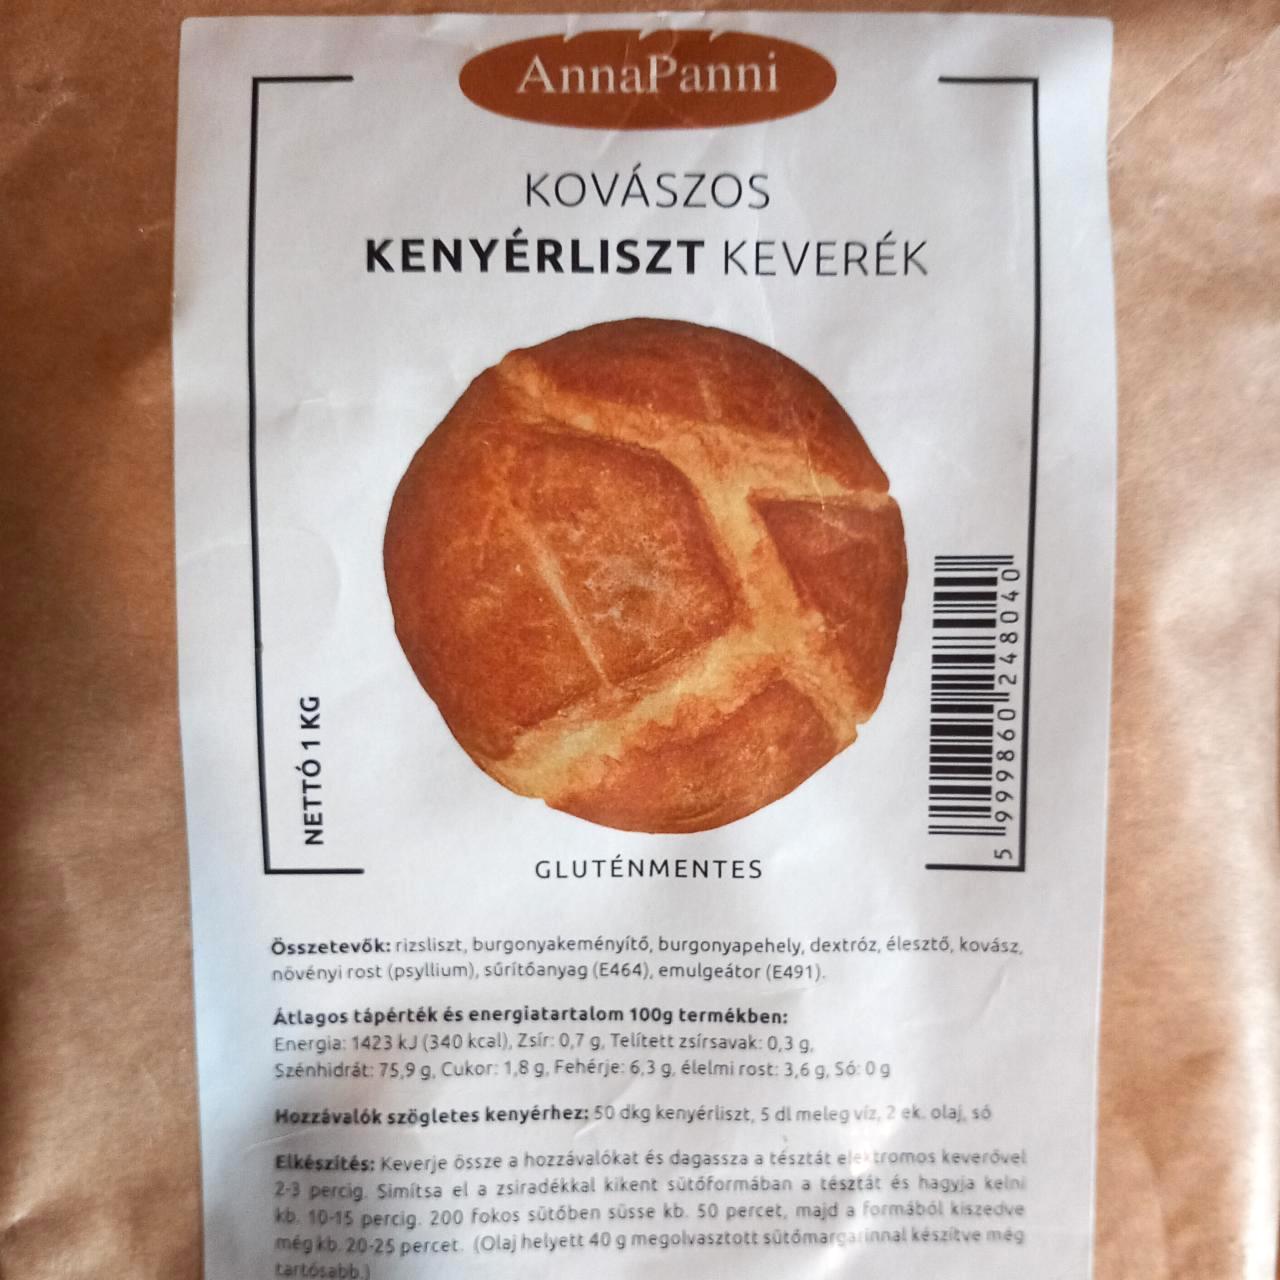 Képek - Kovászos kenyérliszt keverék AnnaPanni